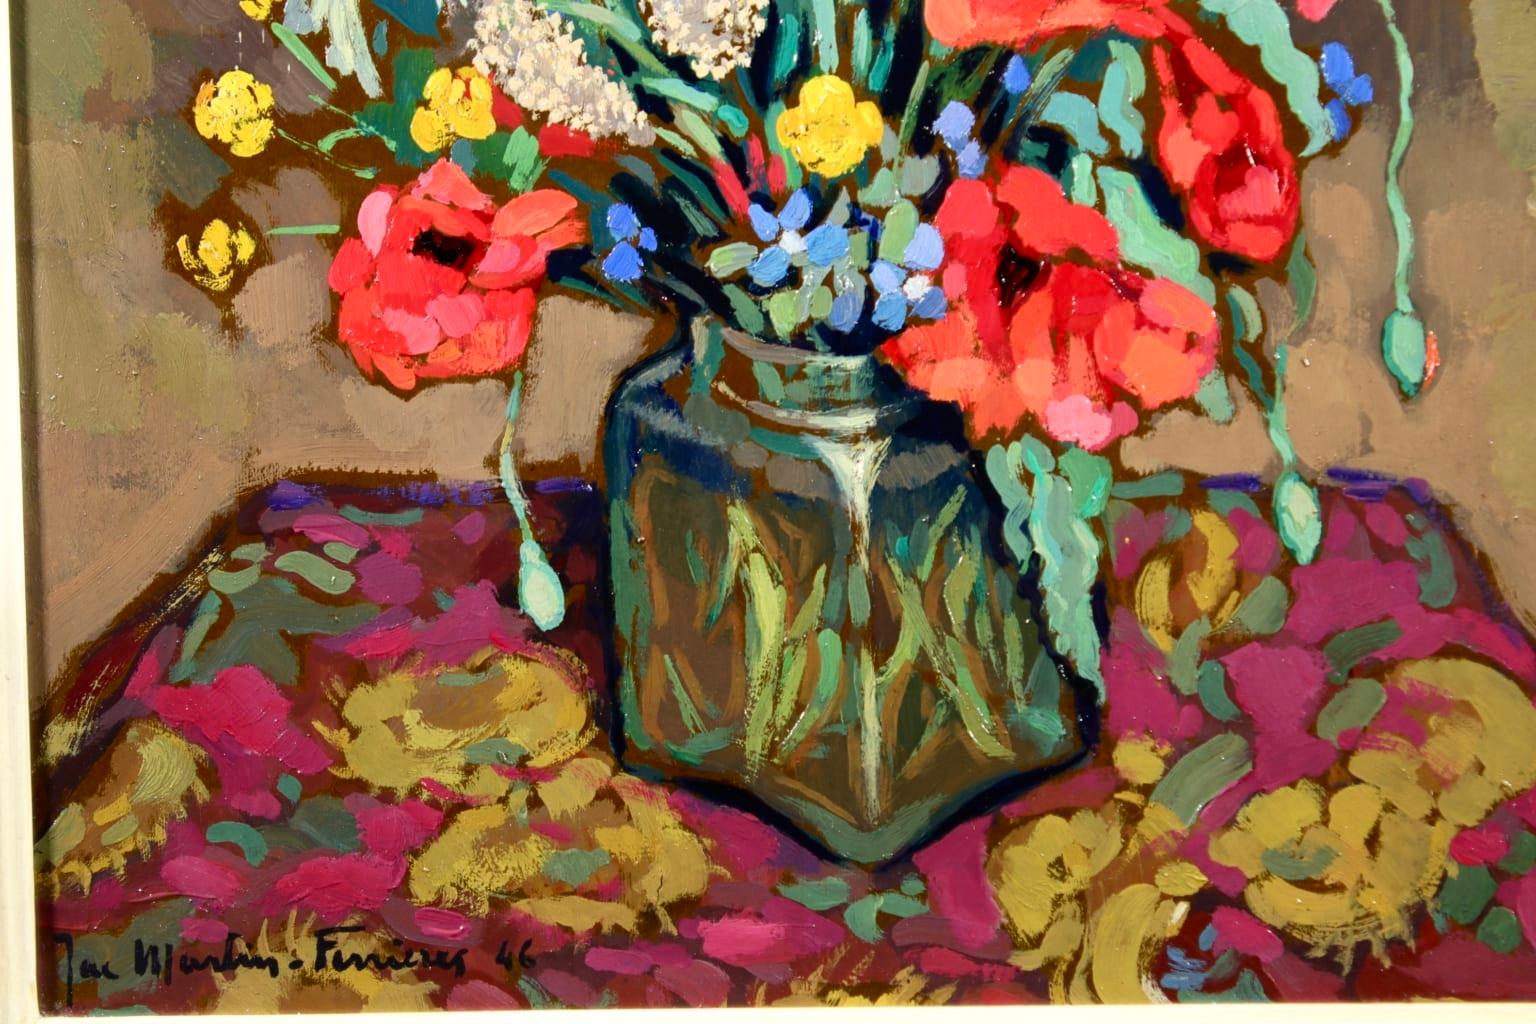 Bouquet de Fleurs - Post Impressionist Oil, Flowers by Jacques Martin-Ferrieres - Post-Impressionist Painting by Jacques Martin-Ferrières